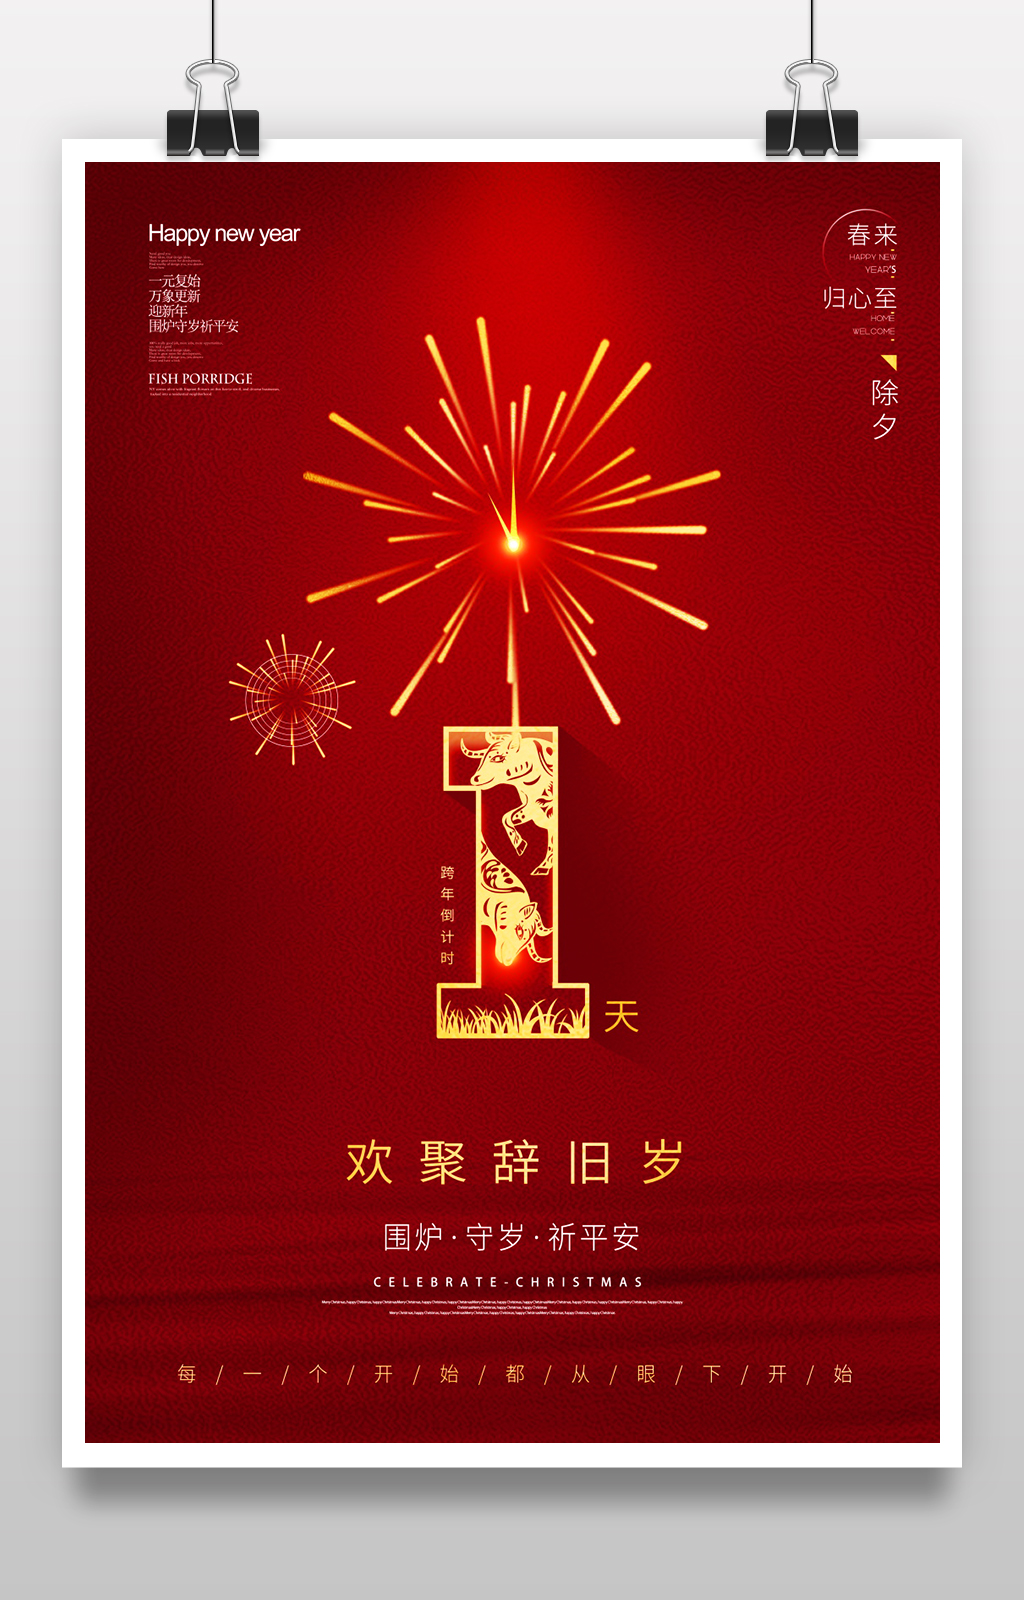 牛年元旦跨年晚会除夕新年倒计时海报立即下载红色喜庆2021牛年春节